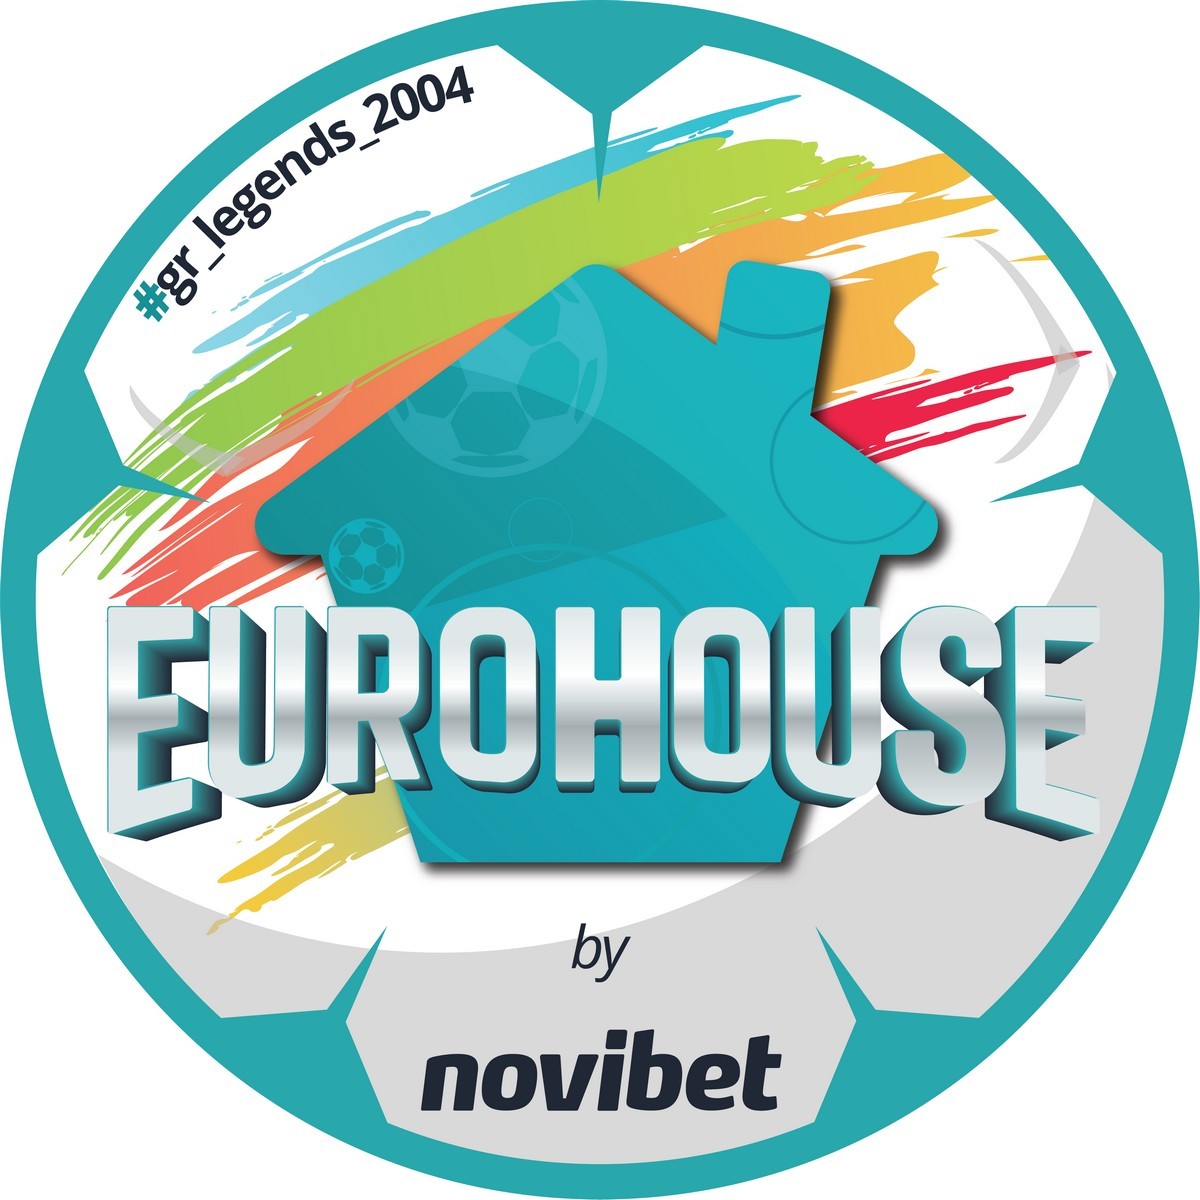 Στο φετινό Euro 2020, οι πιο ποδοσφαιρόφιλες παρέες συγκεντρώνονται στο EUROHOUSE της Novibet και απολαμβάνουν την απόλυτη εμπειρία του Ευρωπαϊκού.